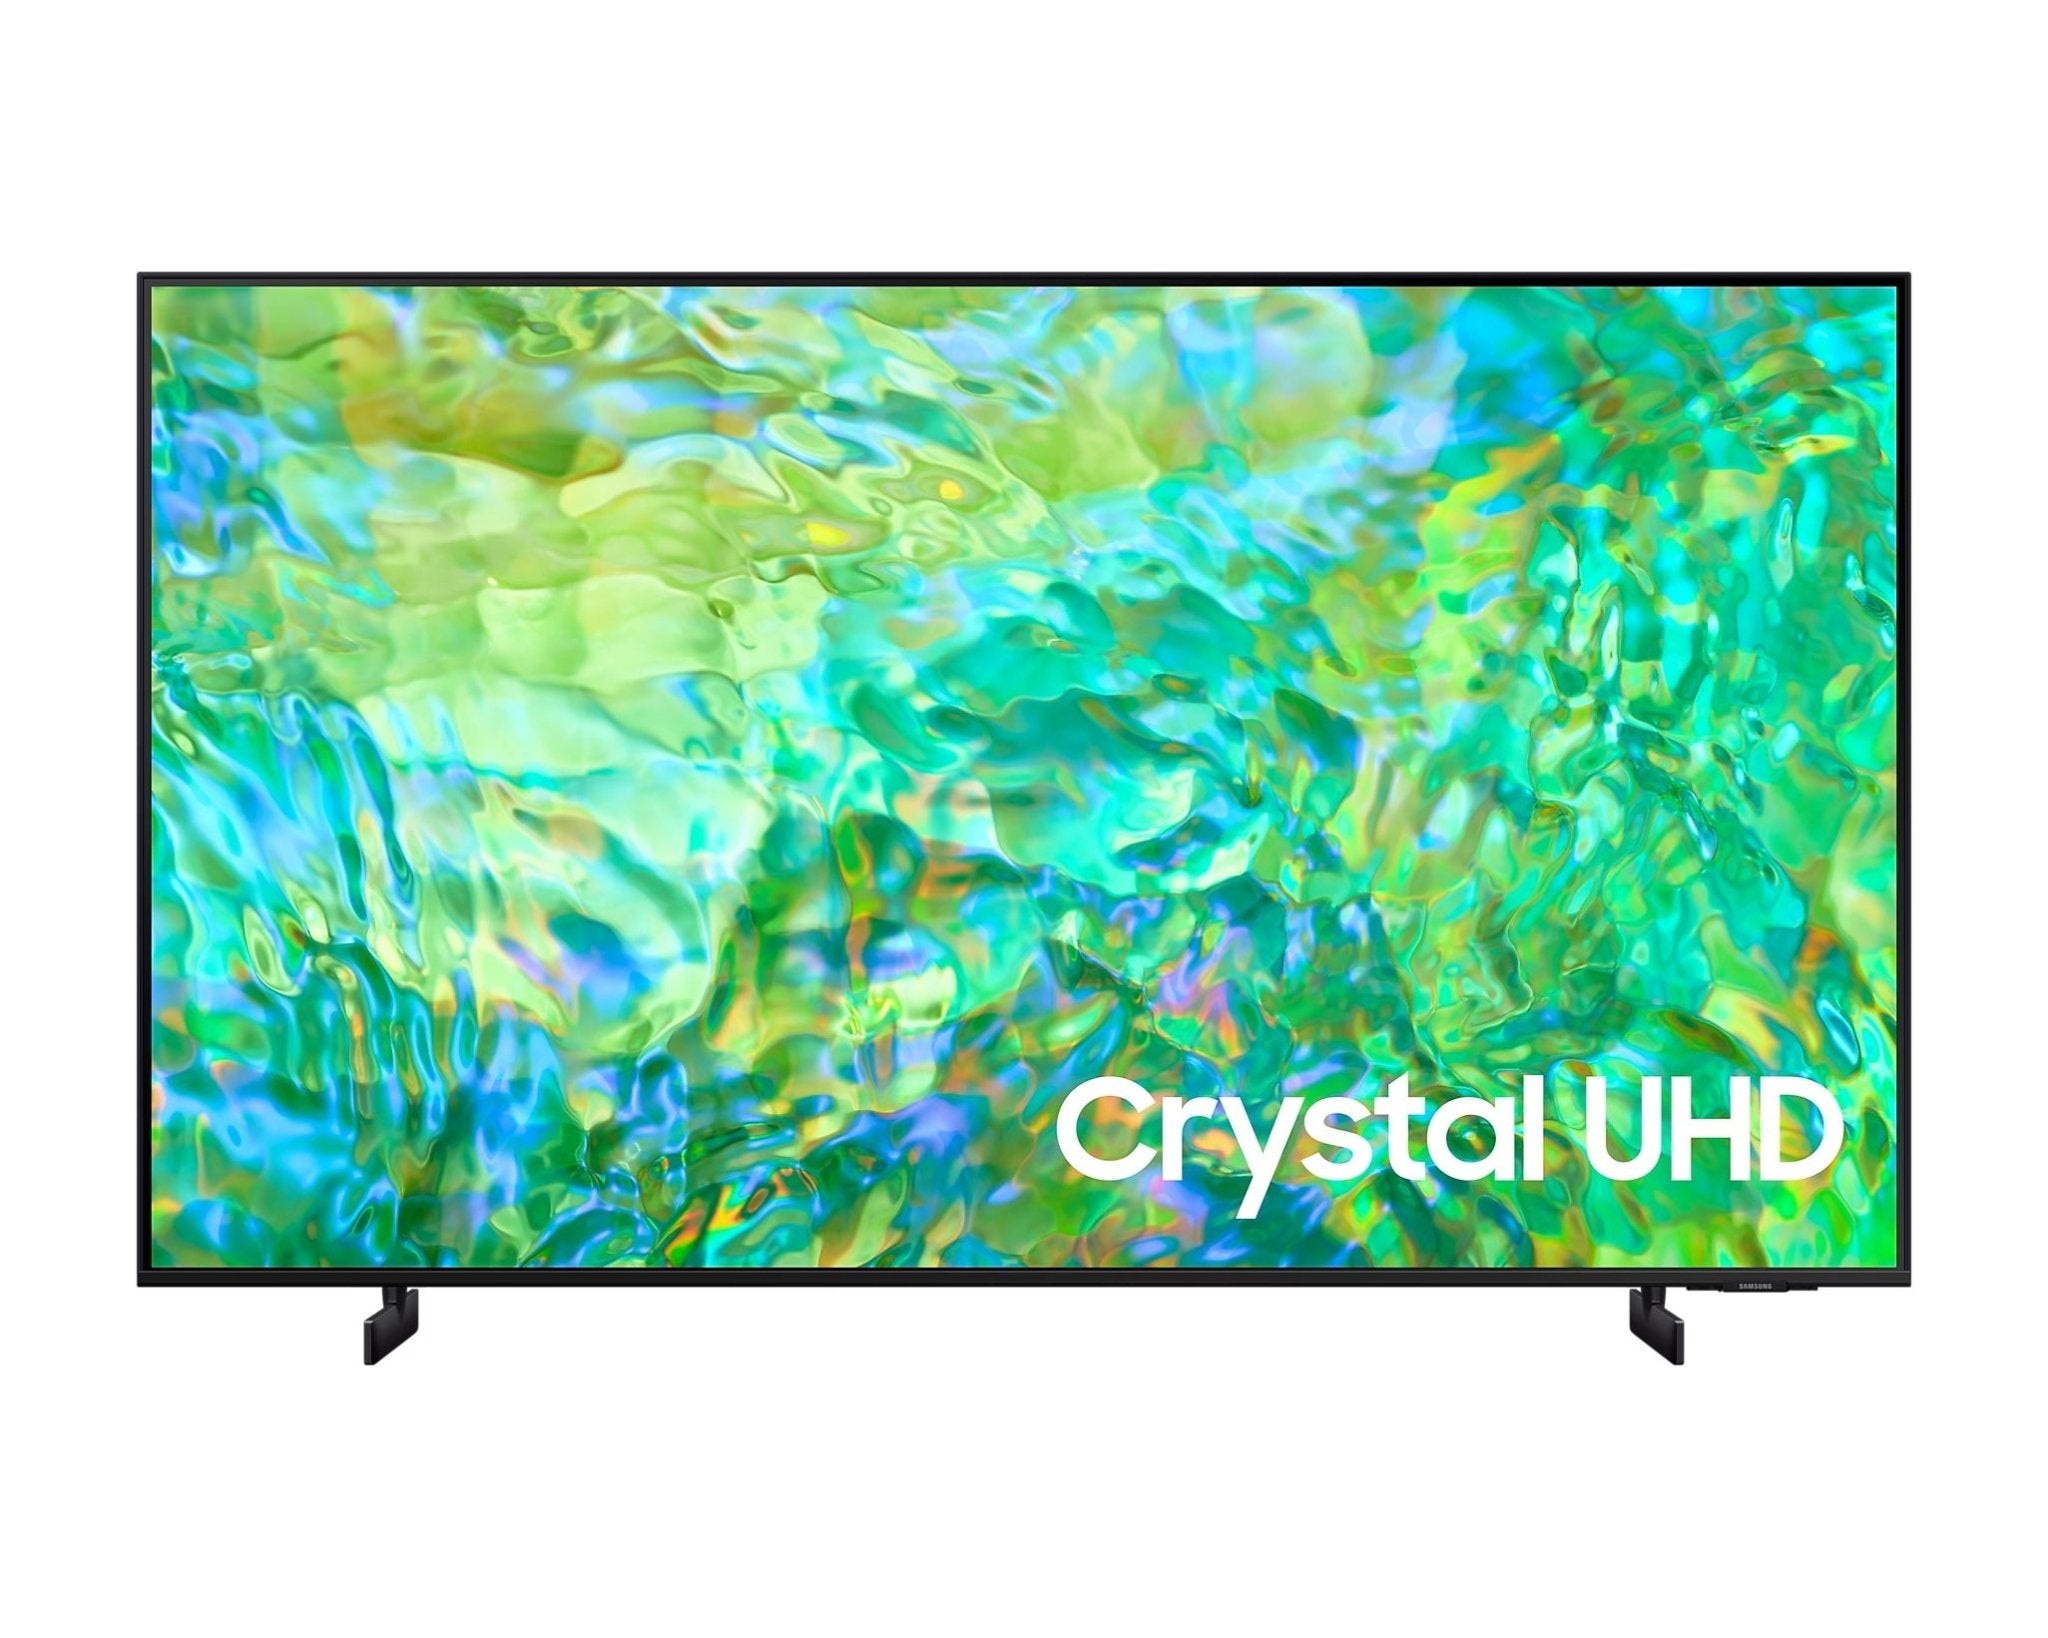 Samsung 三星 CU8100 系列 Crystal UHD 4K 電視 - Fever Electrics 電器熱網購平台